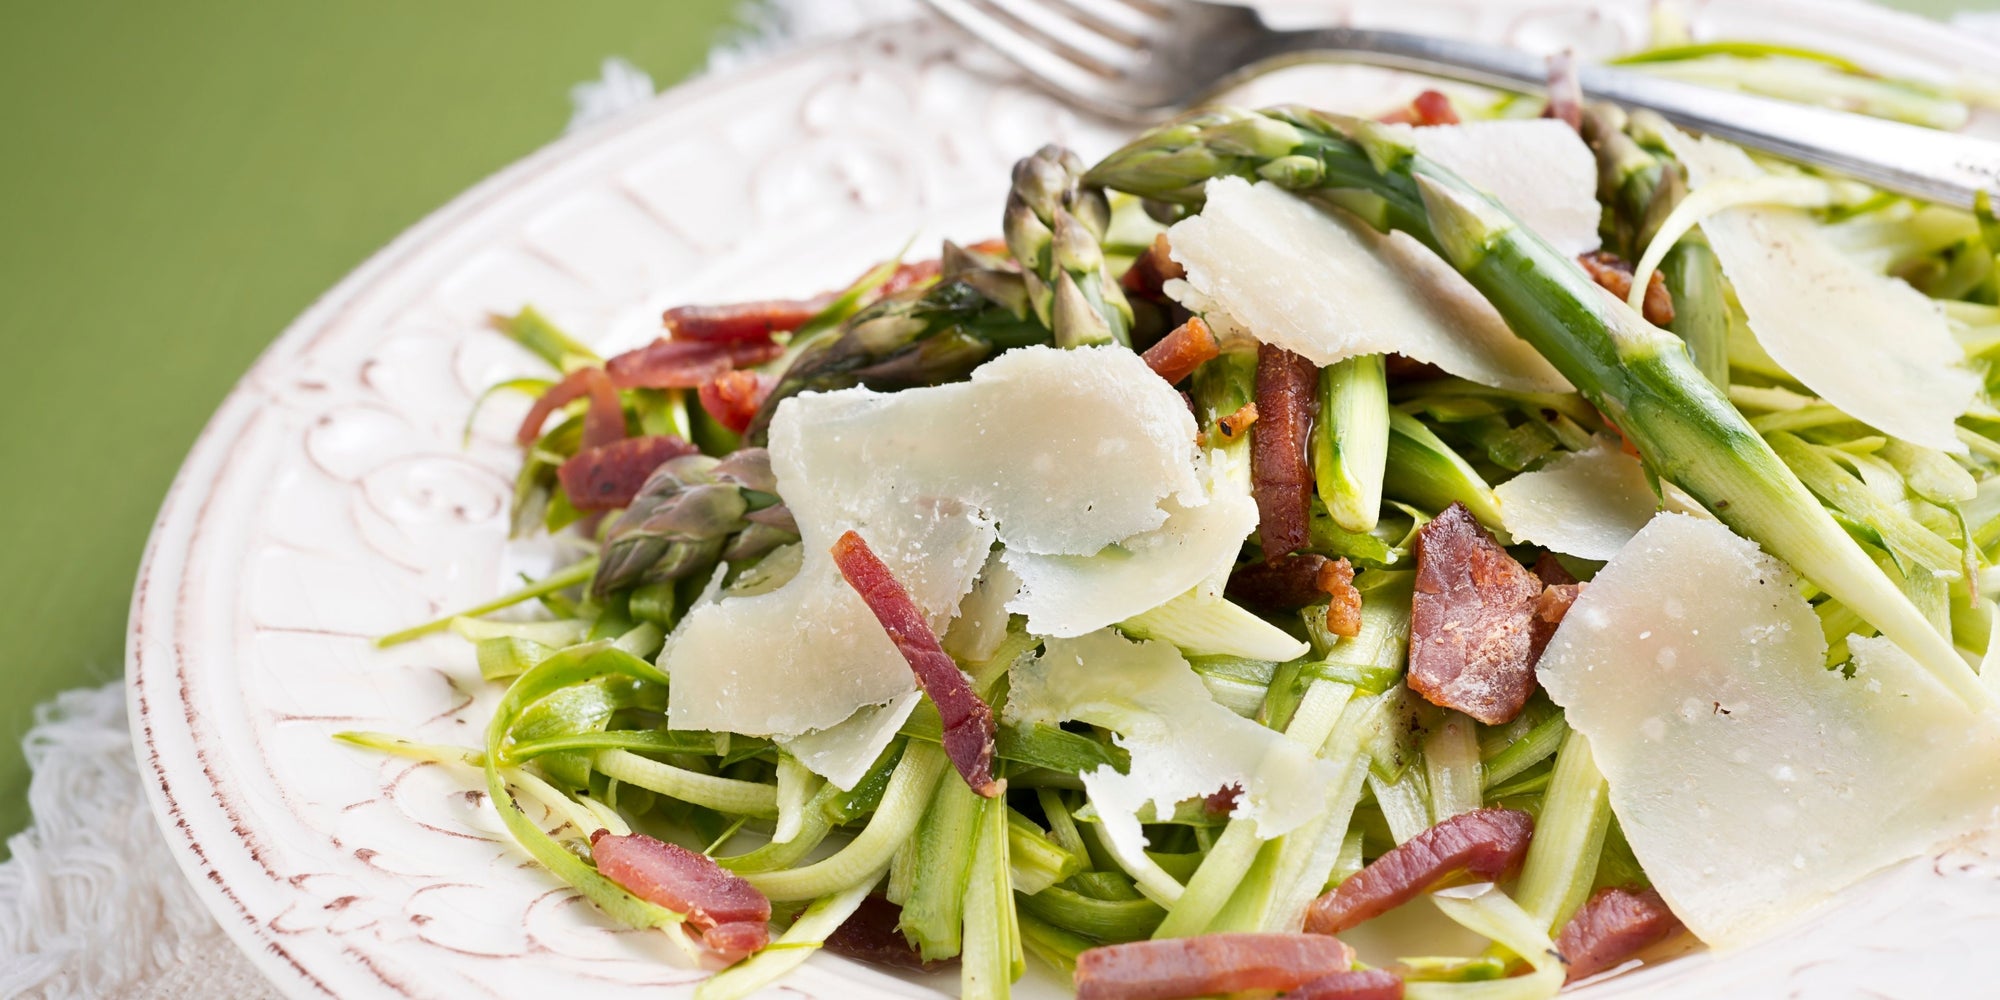 Fennel and Asparagus Salad